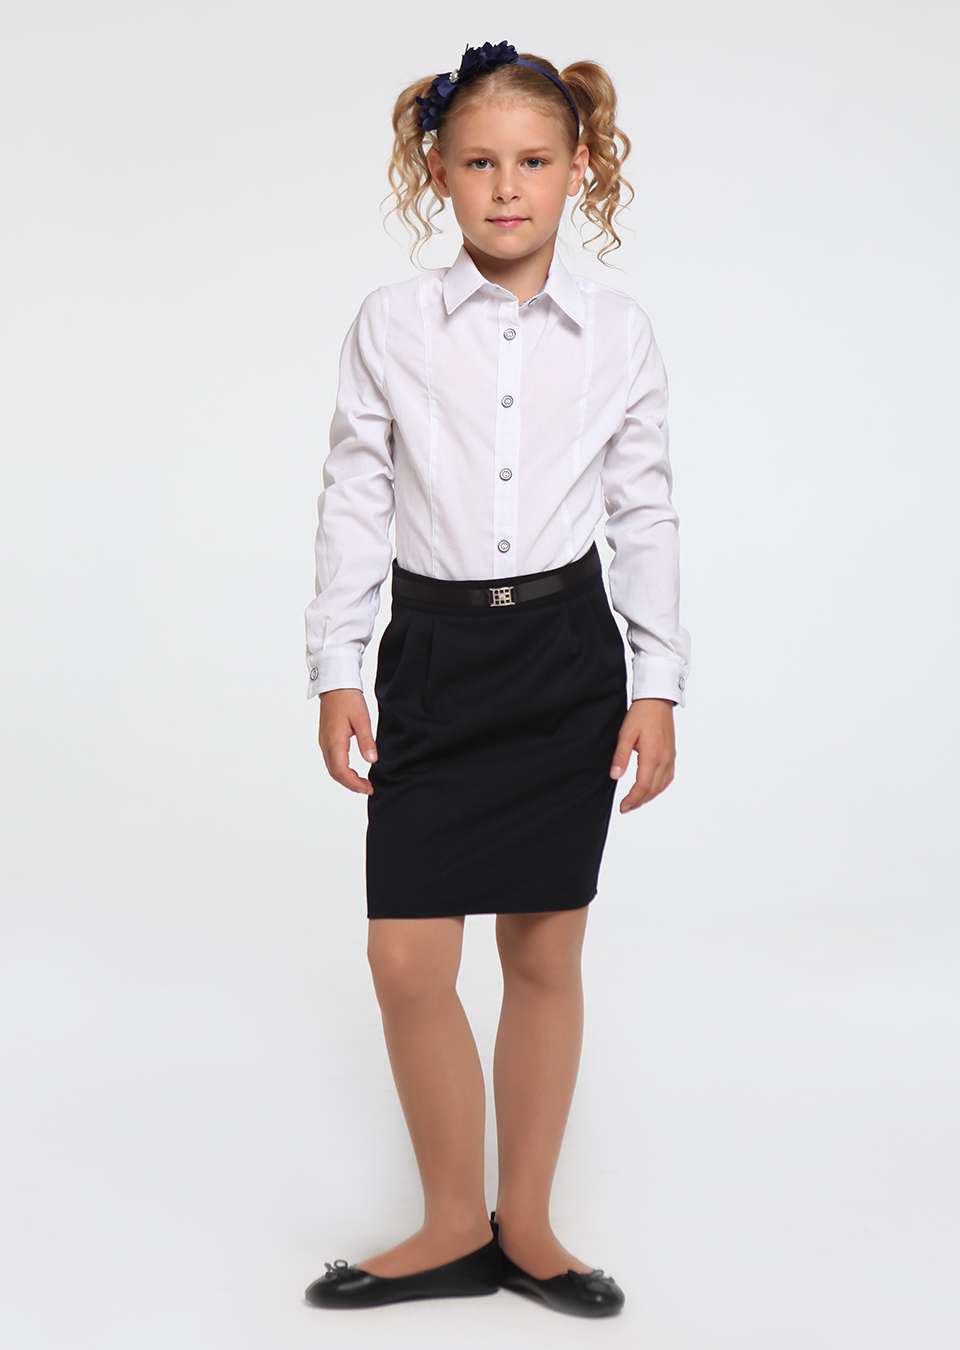 Блуза с галстуком школьная для девочек